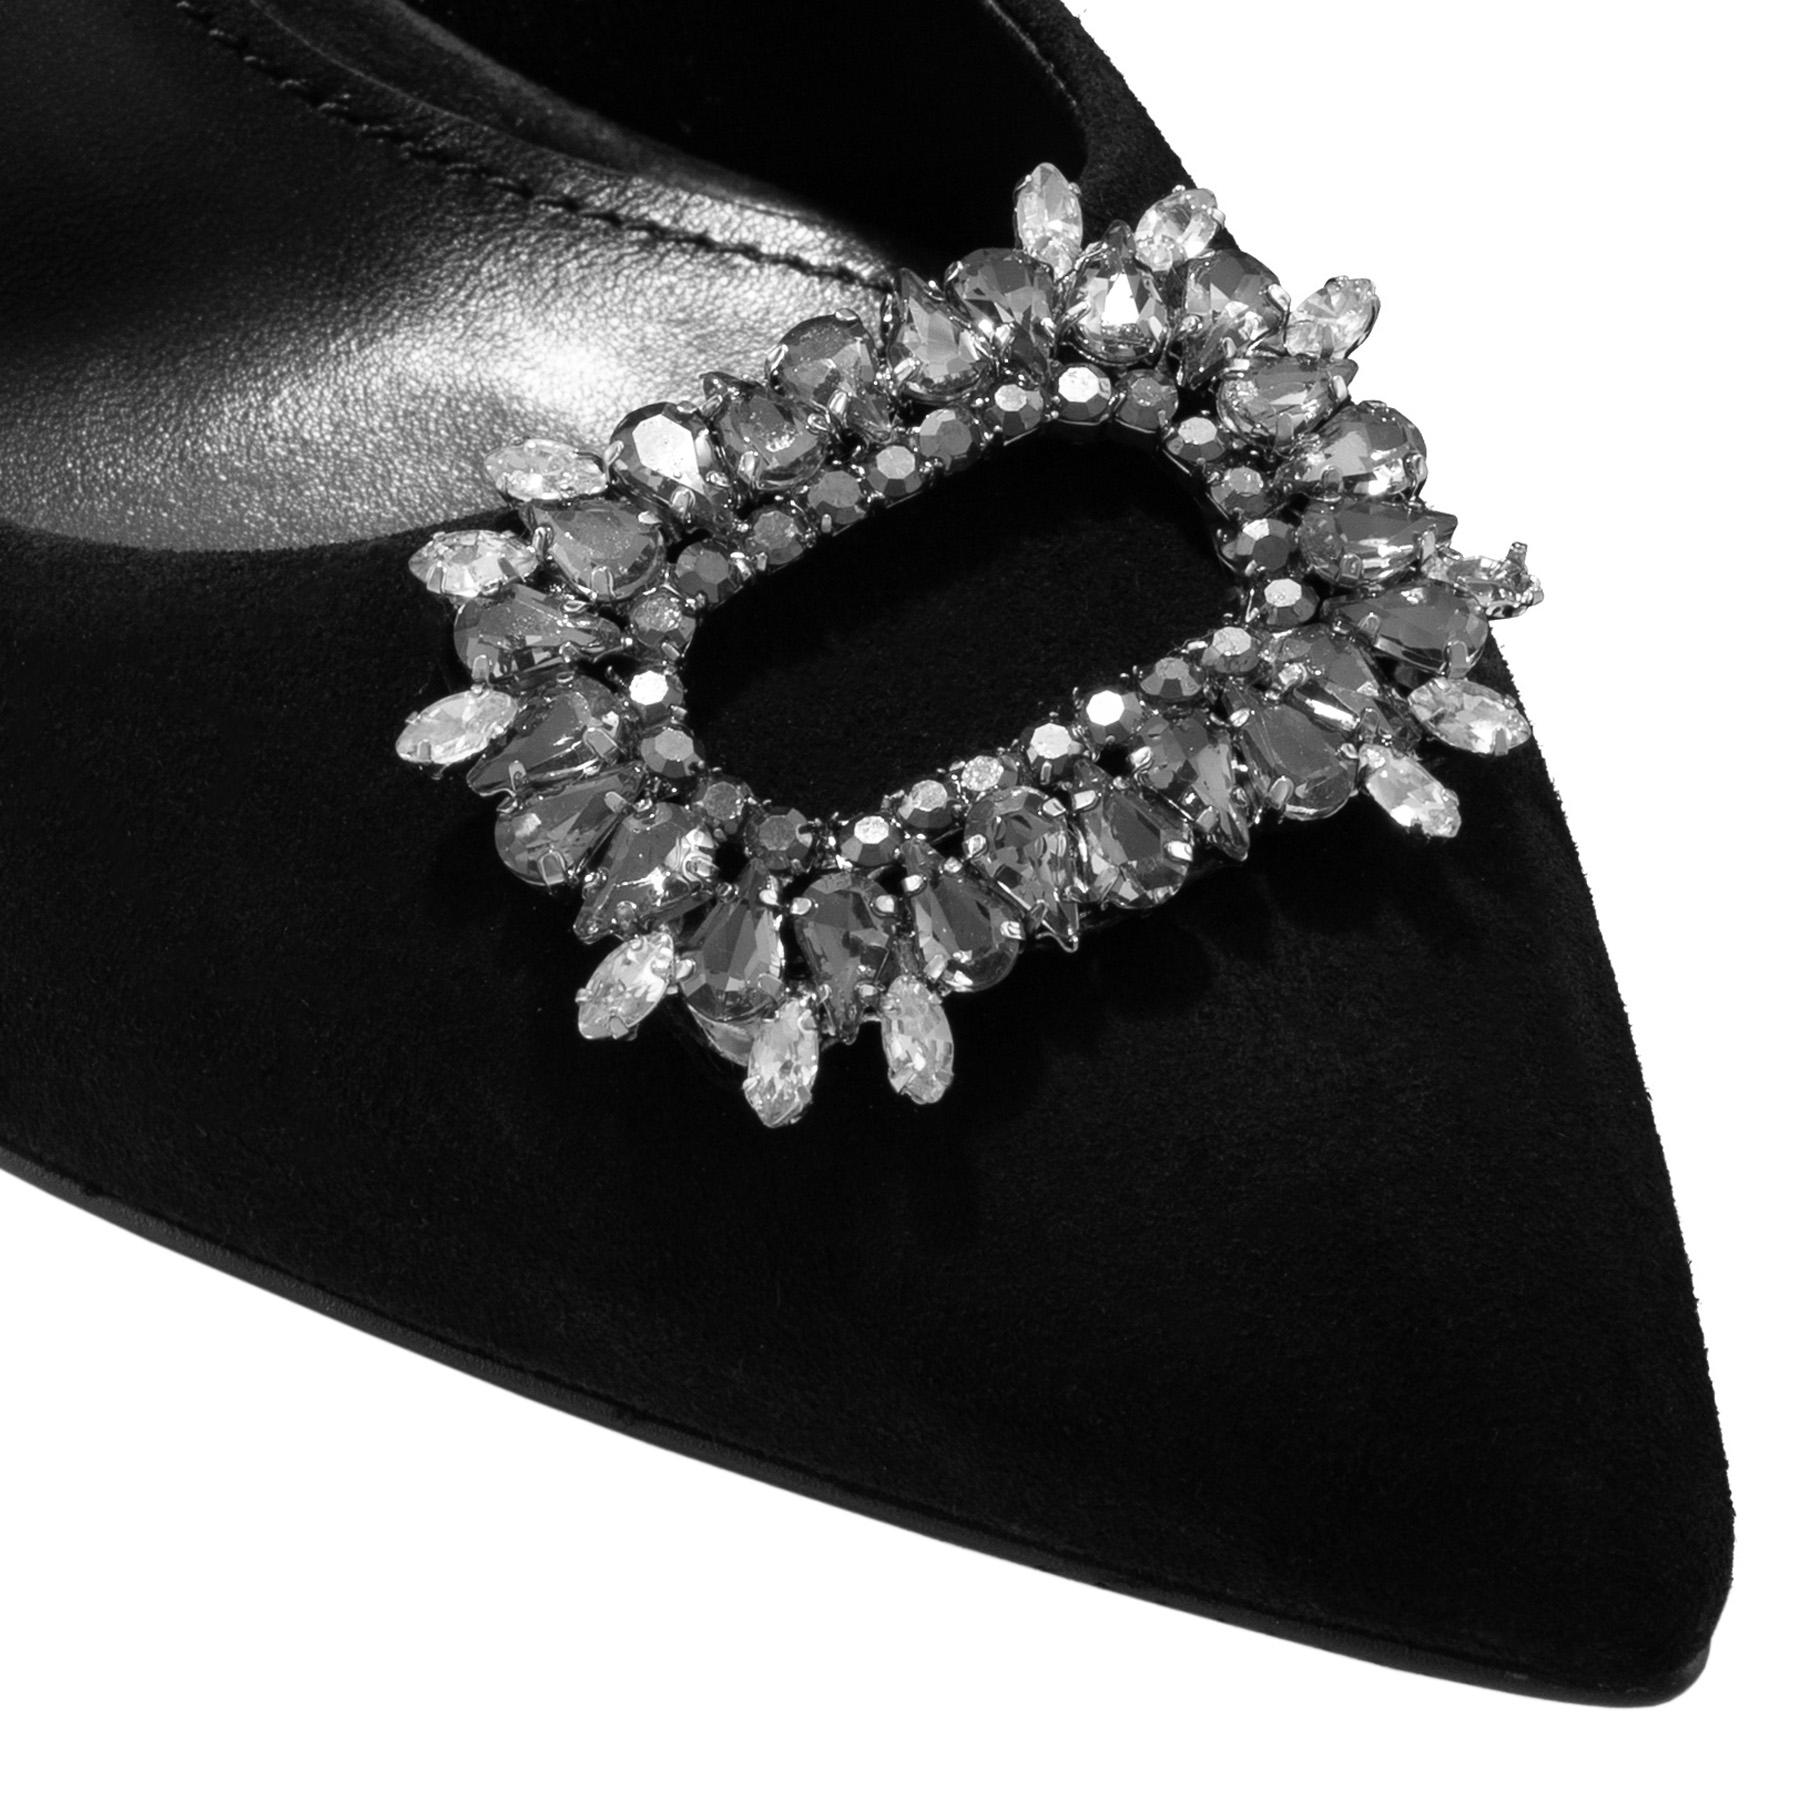 Imagine Pantofi Eleganti Dama 7549 Camoscio Negru